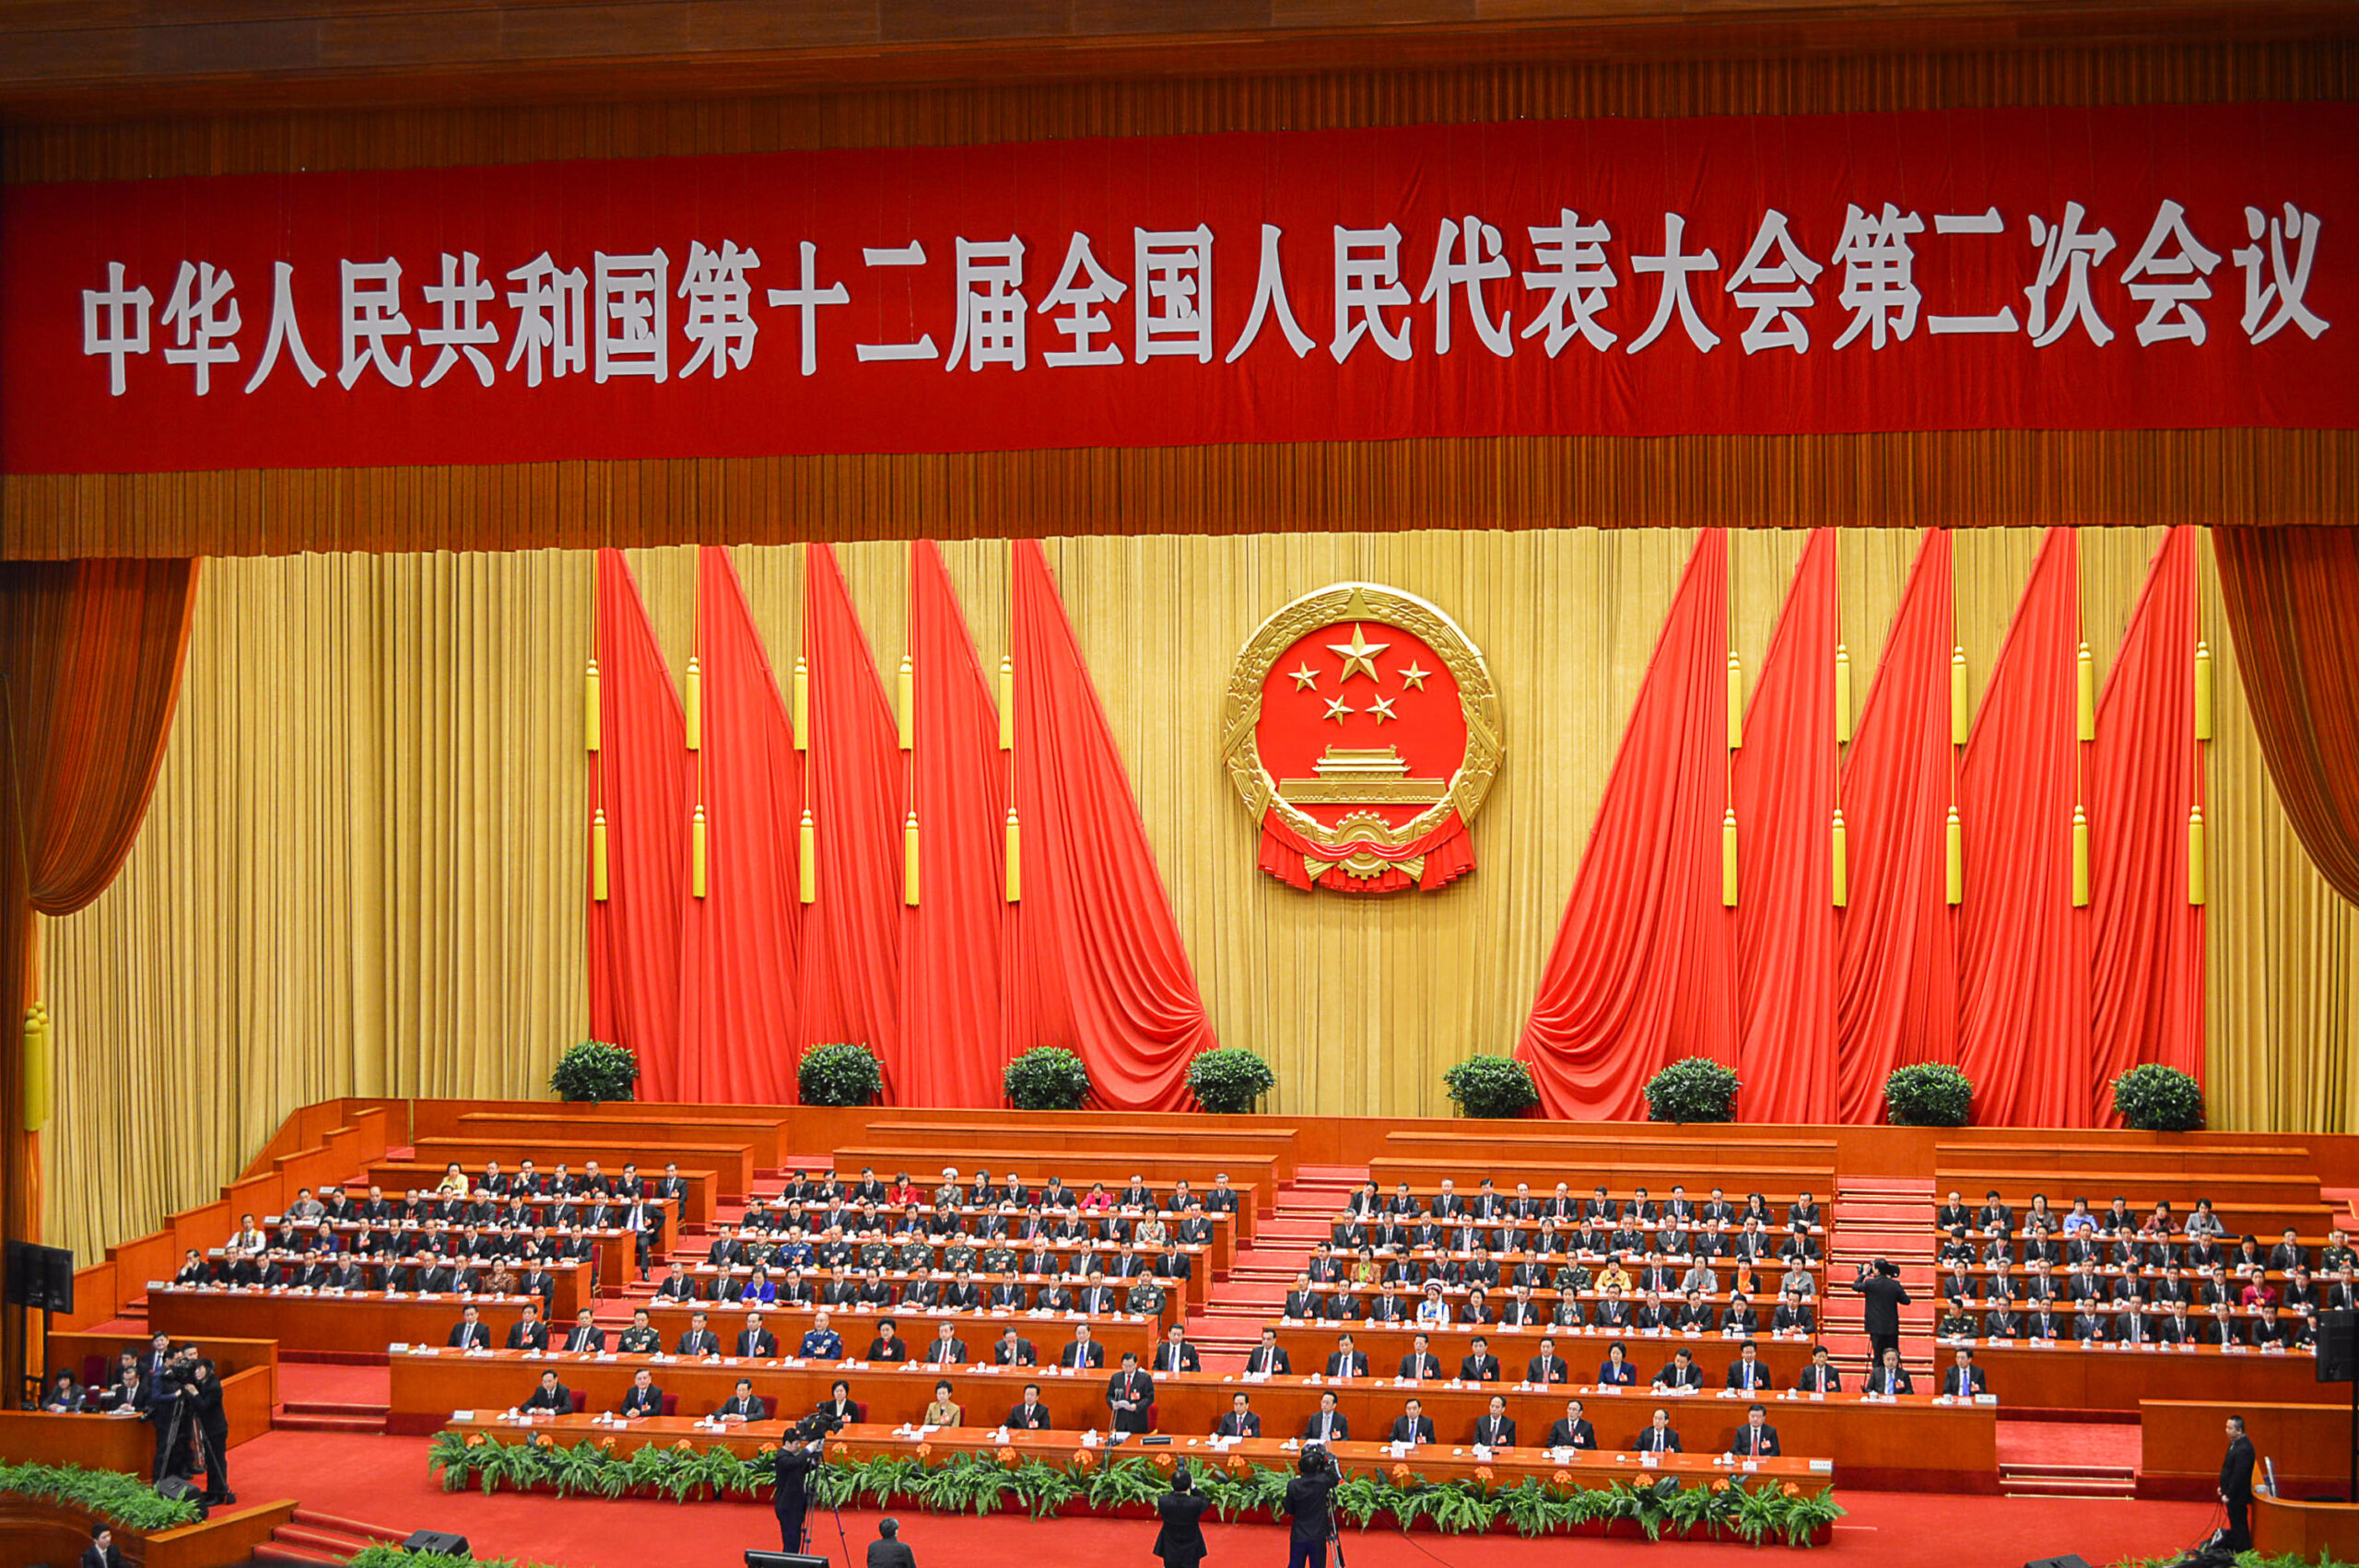 Mit 96 verstorben: Jiang Zemin und der Machtaufstieg Chinas